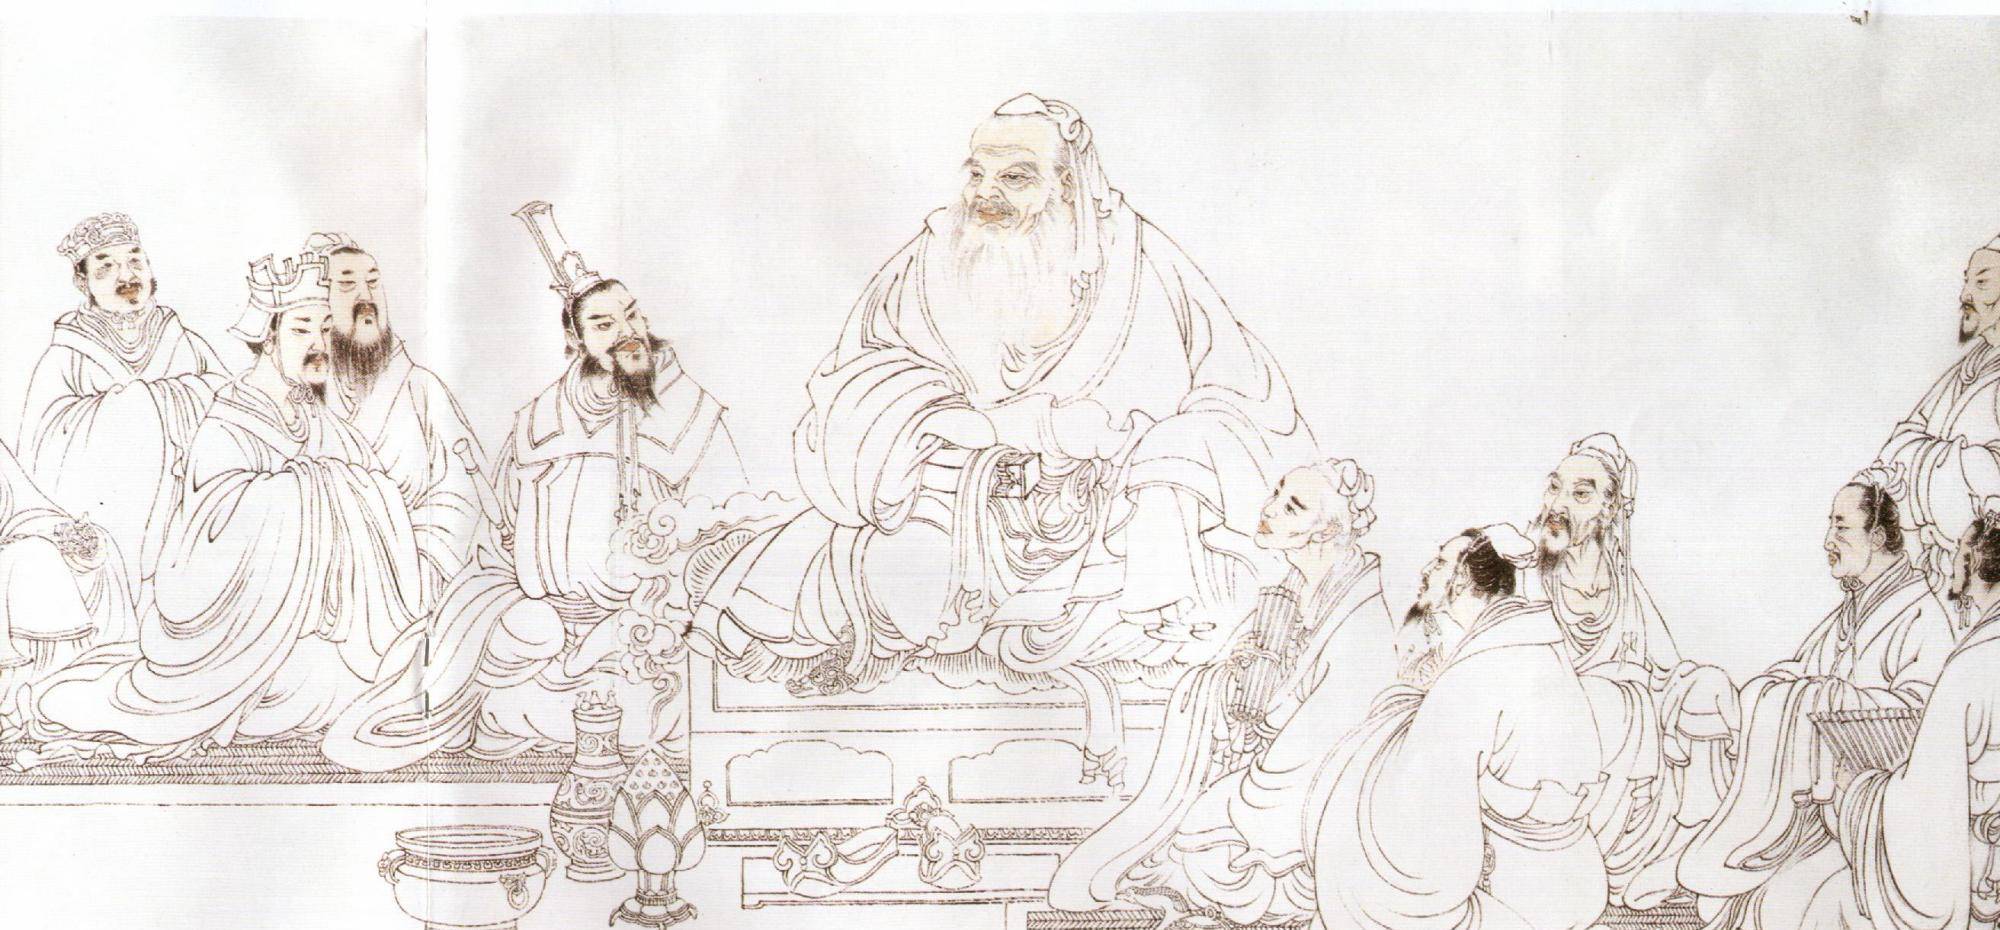 为人处世:孔子对颜回的一番规劝,阐明了中国古代"道德